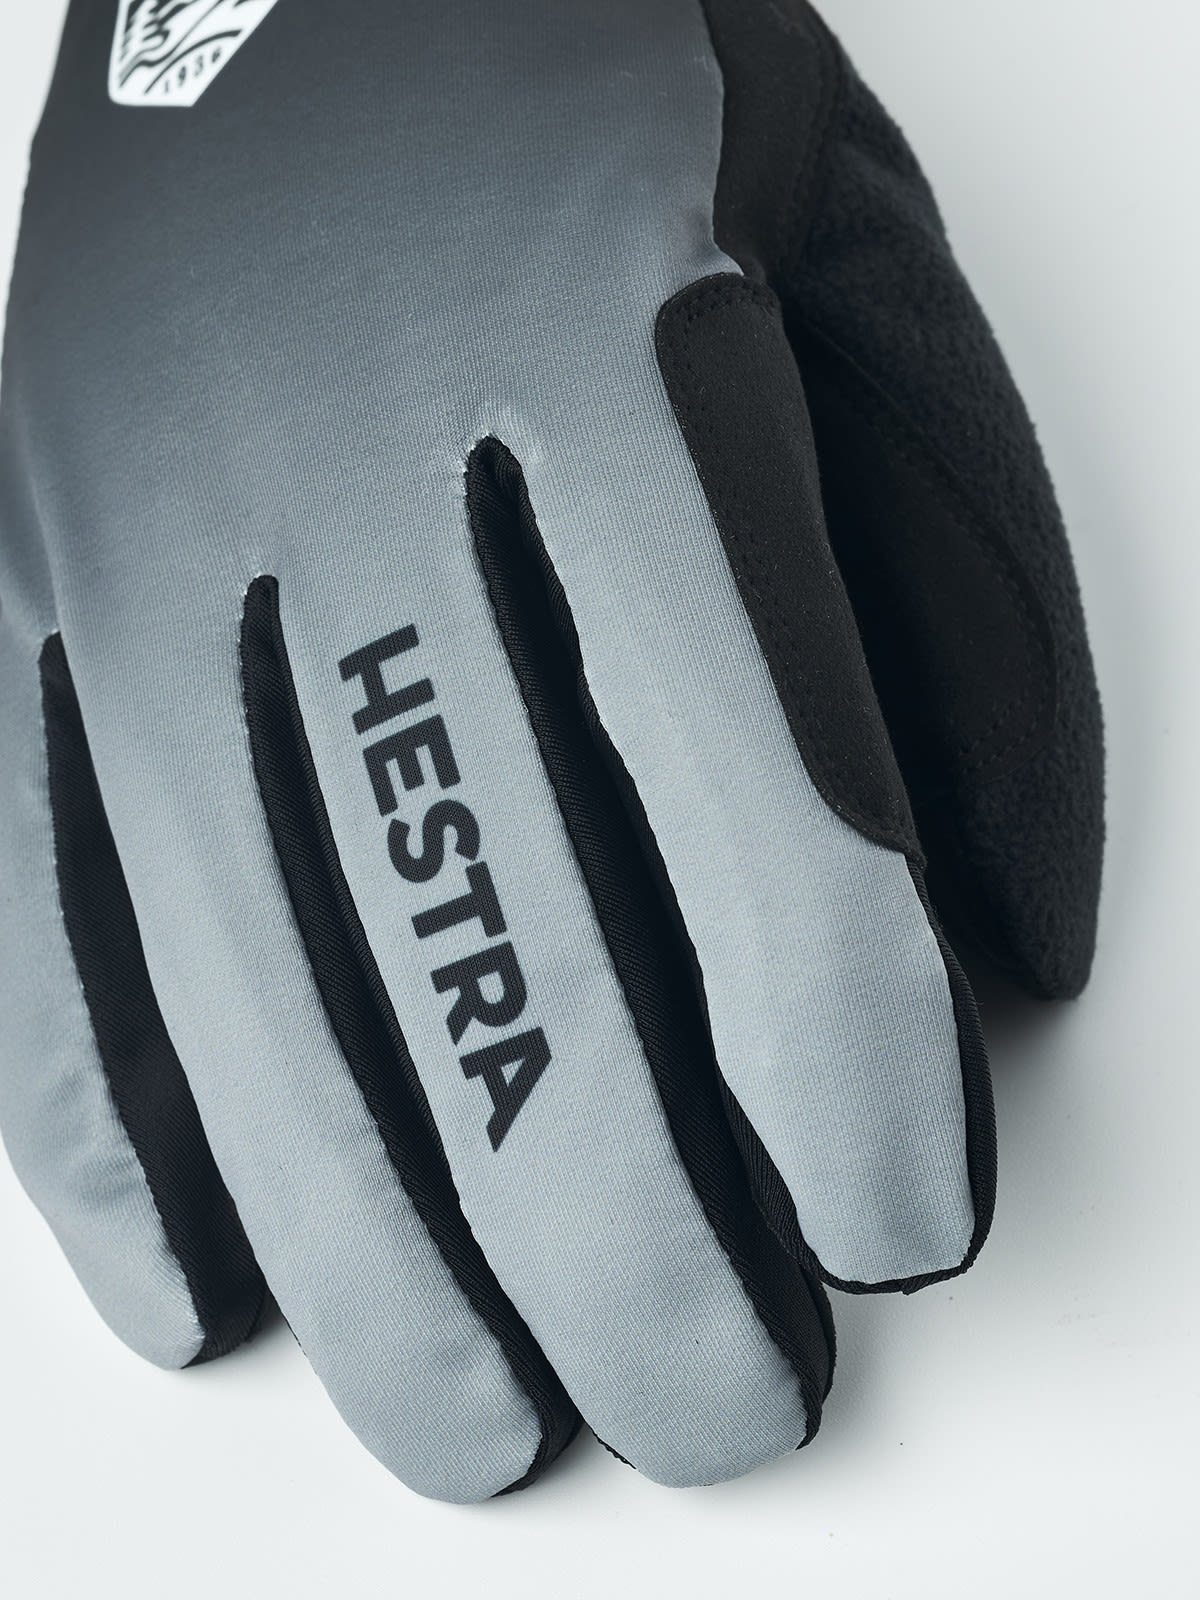 Hestra Fleecehandschuhe Hestra Accessoires Dark Xc Pace Grey